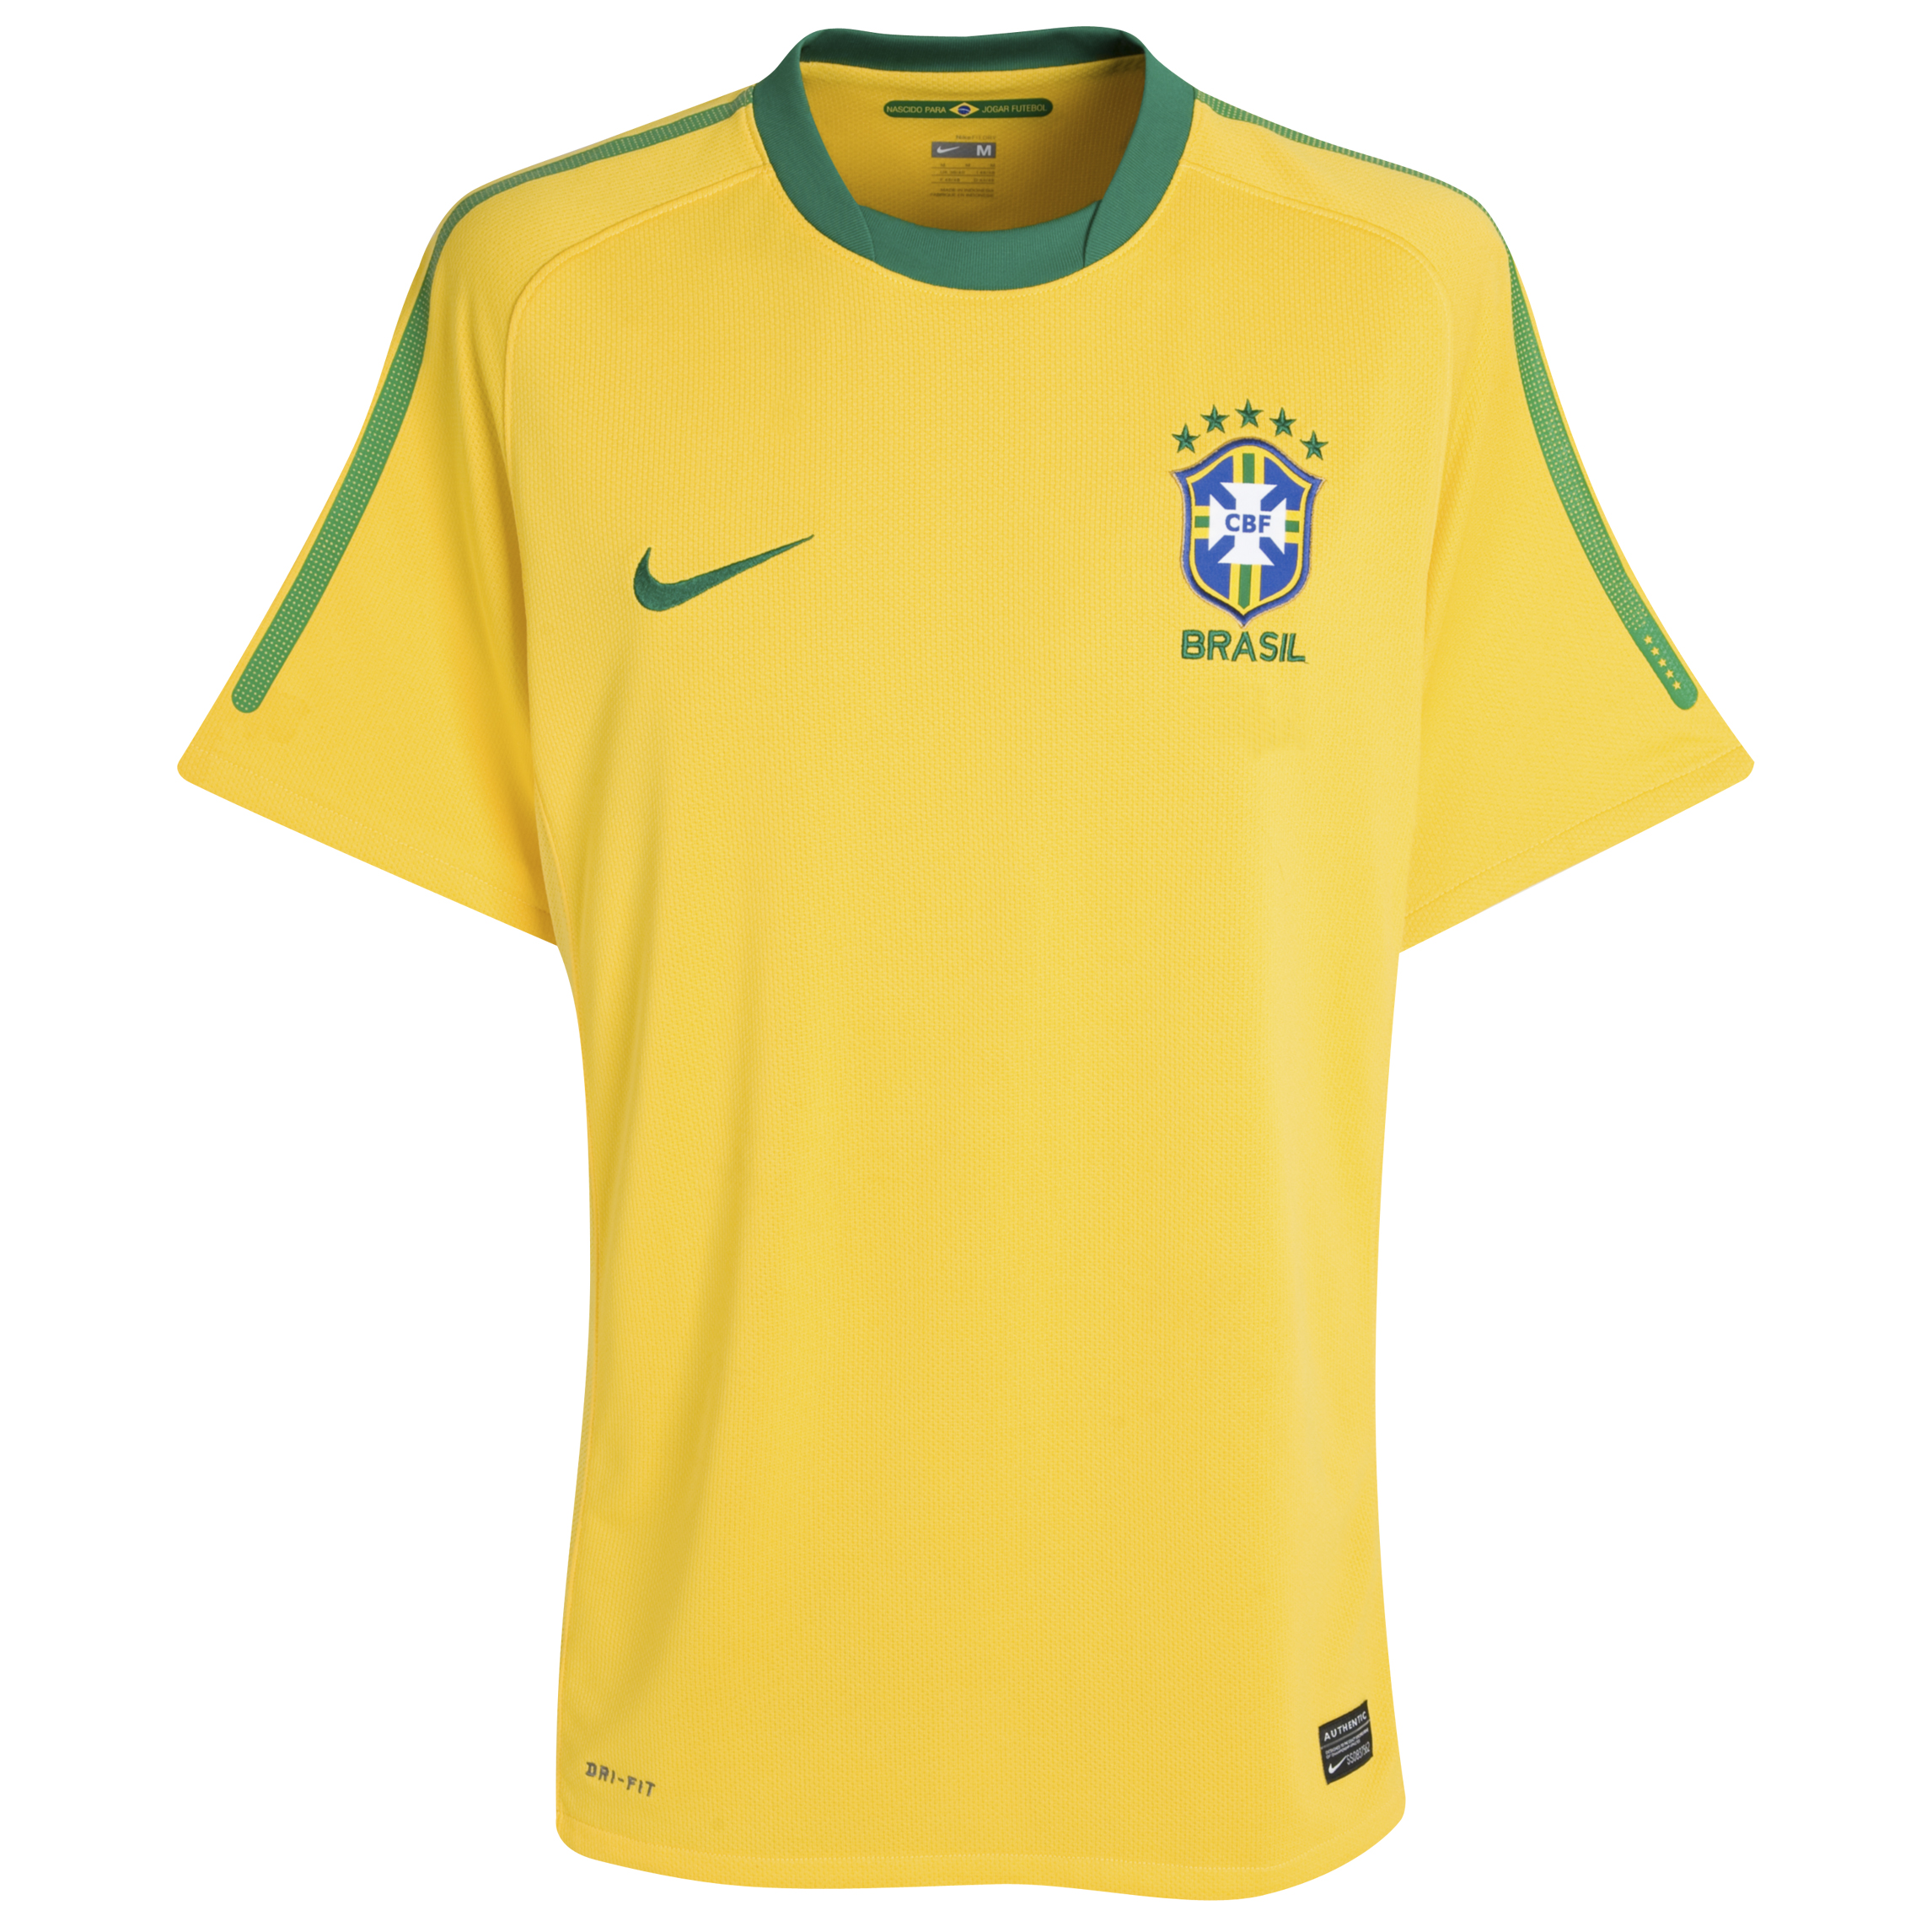 الملابس الخاصة بالمنتخبات في كأس العالم (جنوب أفريقيا 2010) Kb-65865